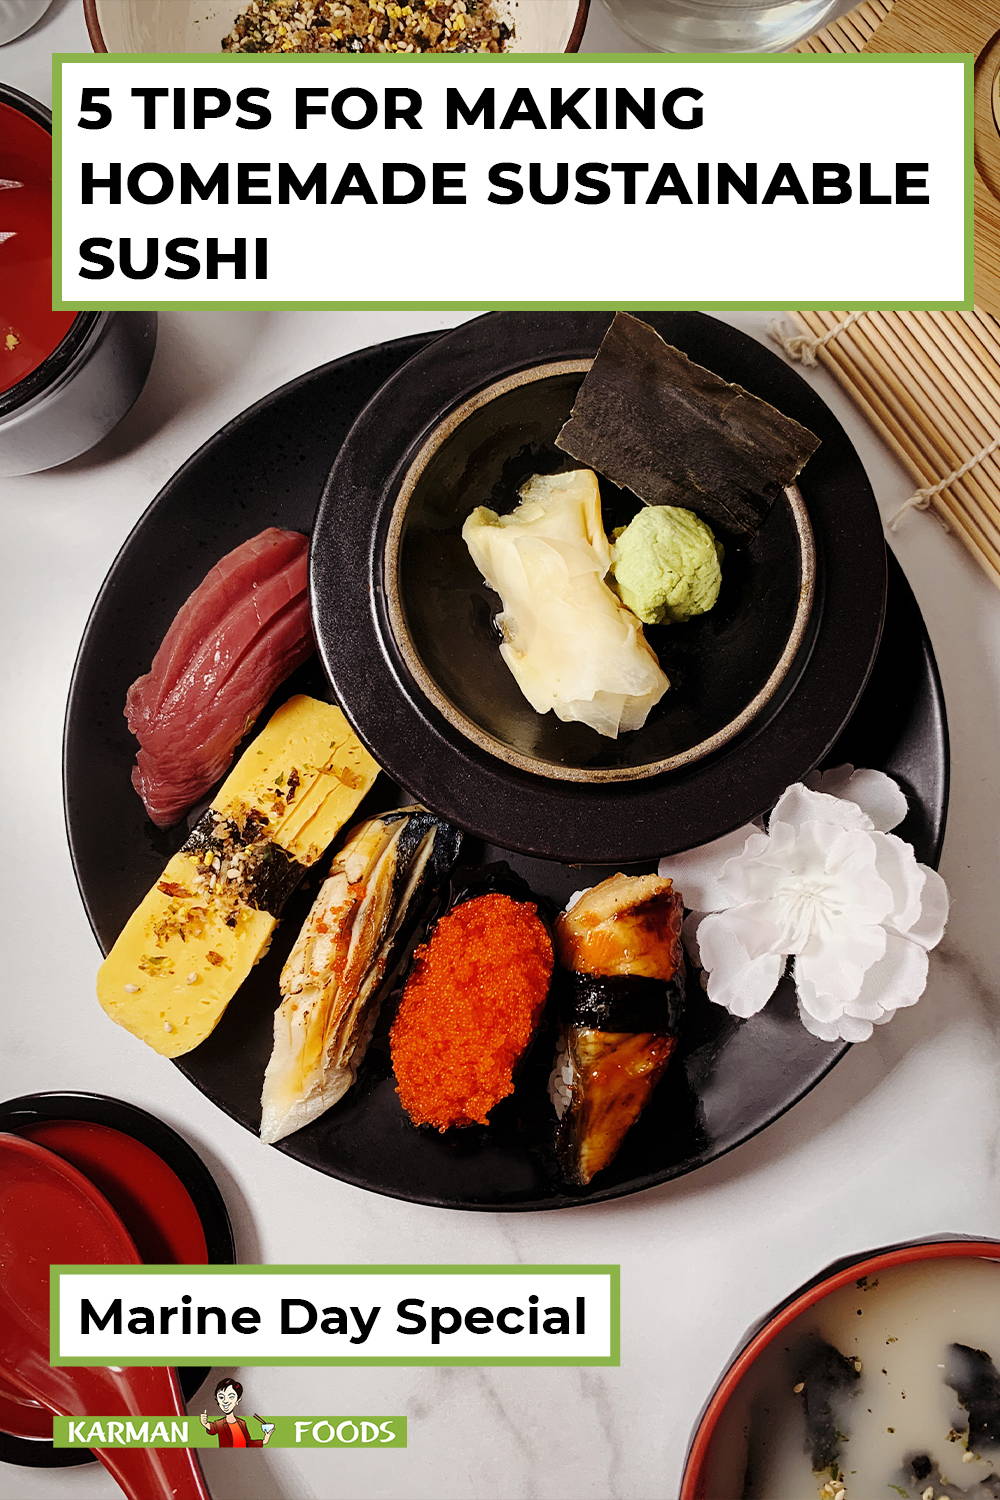 Proper etiquette for eating sushi